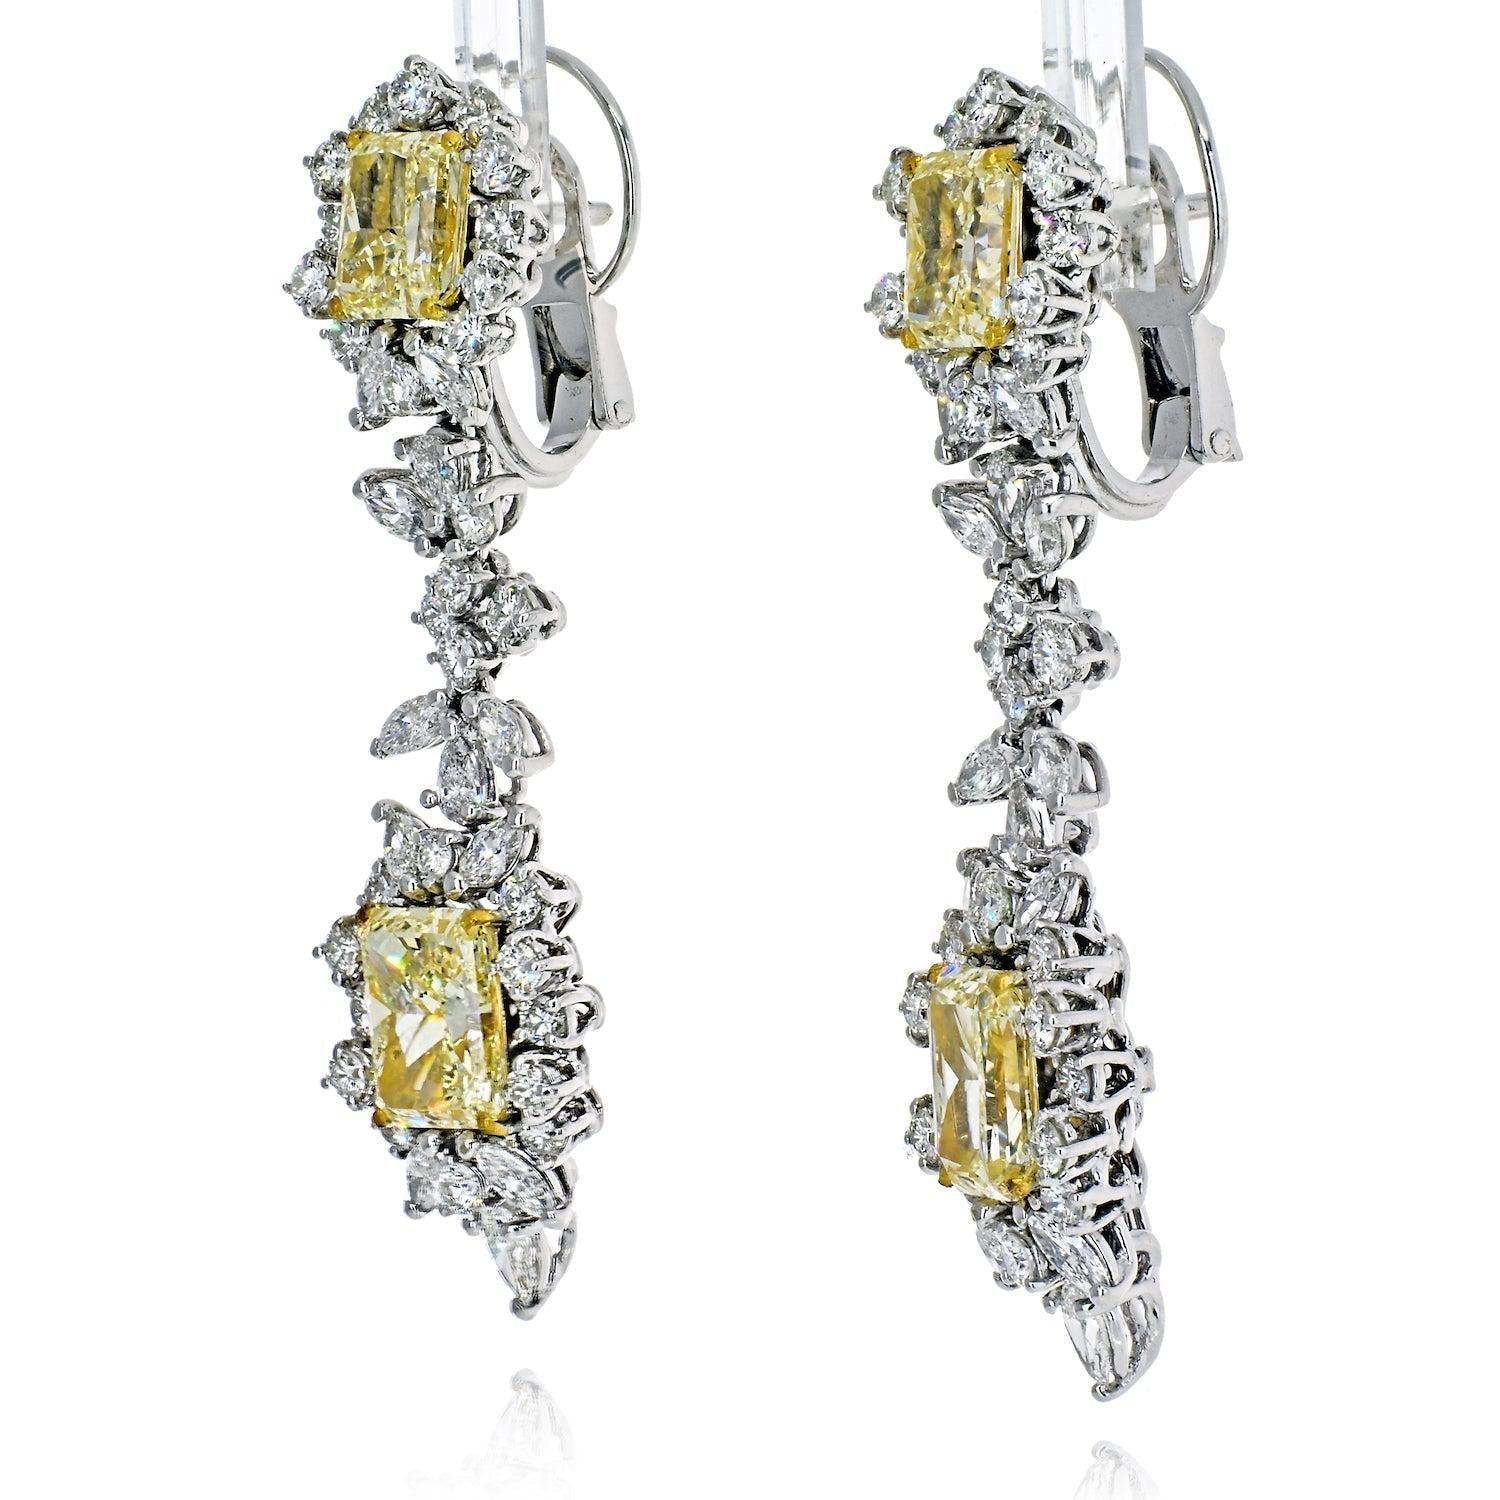 10.75 Carat Radiant-Cut VVS1 Fancy Yellow Diamond Drop Earrings in 18K White Gold - ASSAY